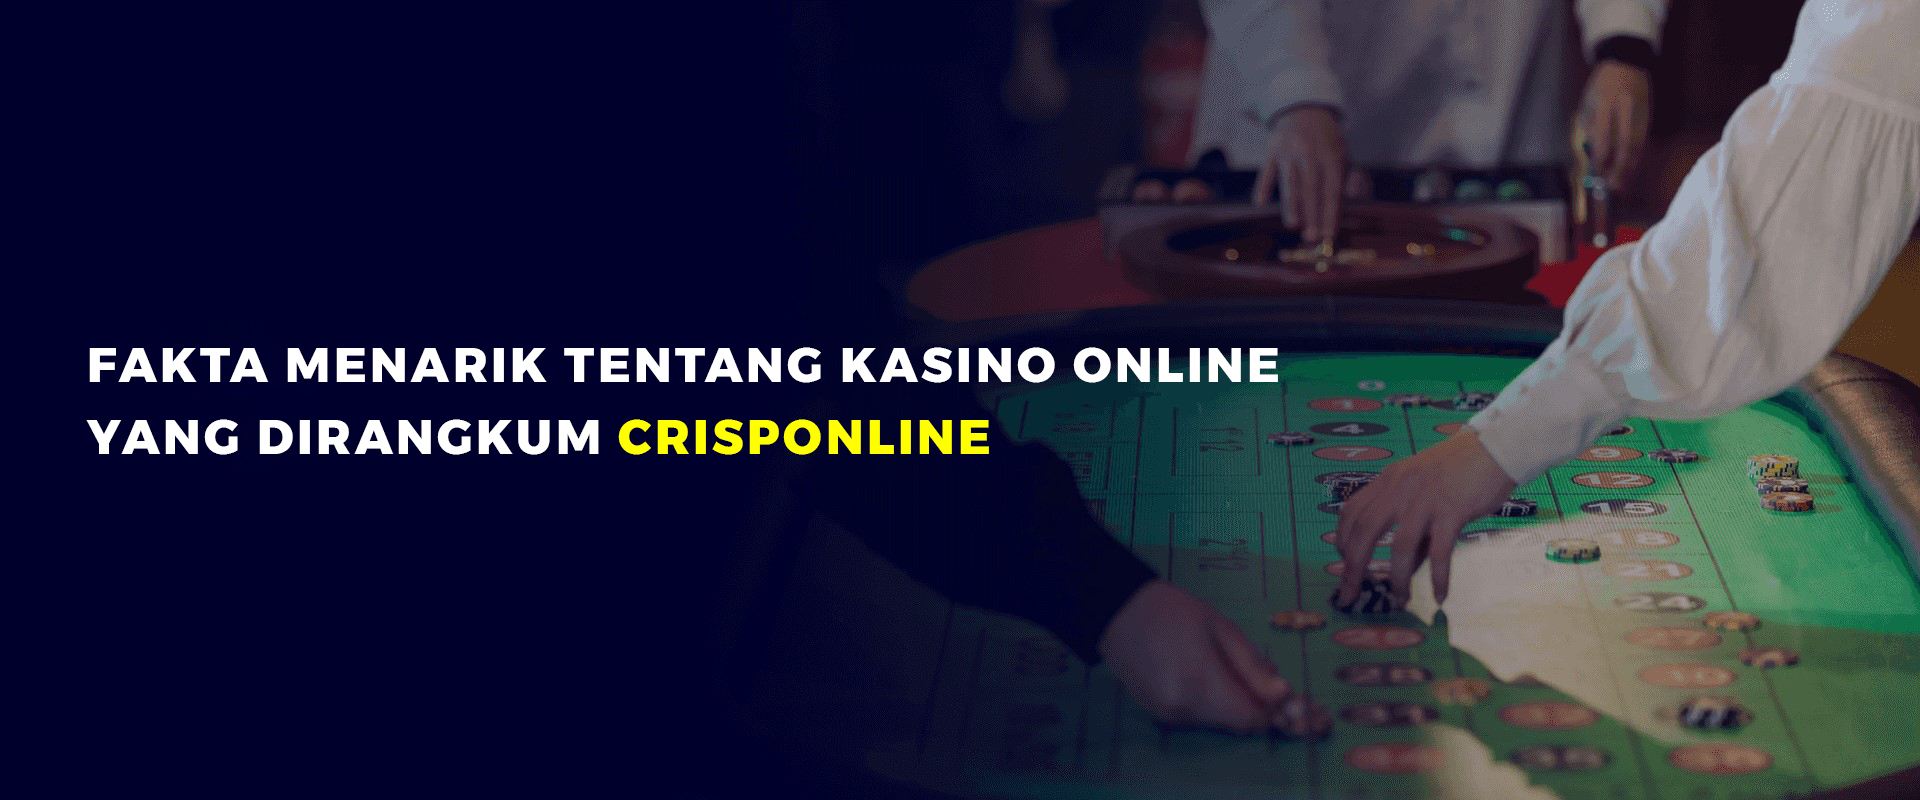 Fakta Menarik Casino Online